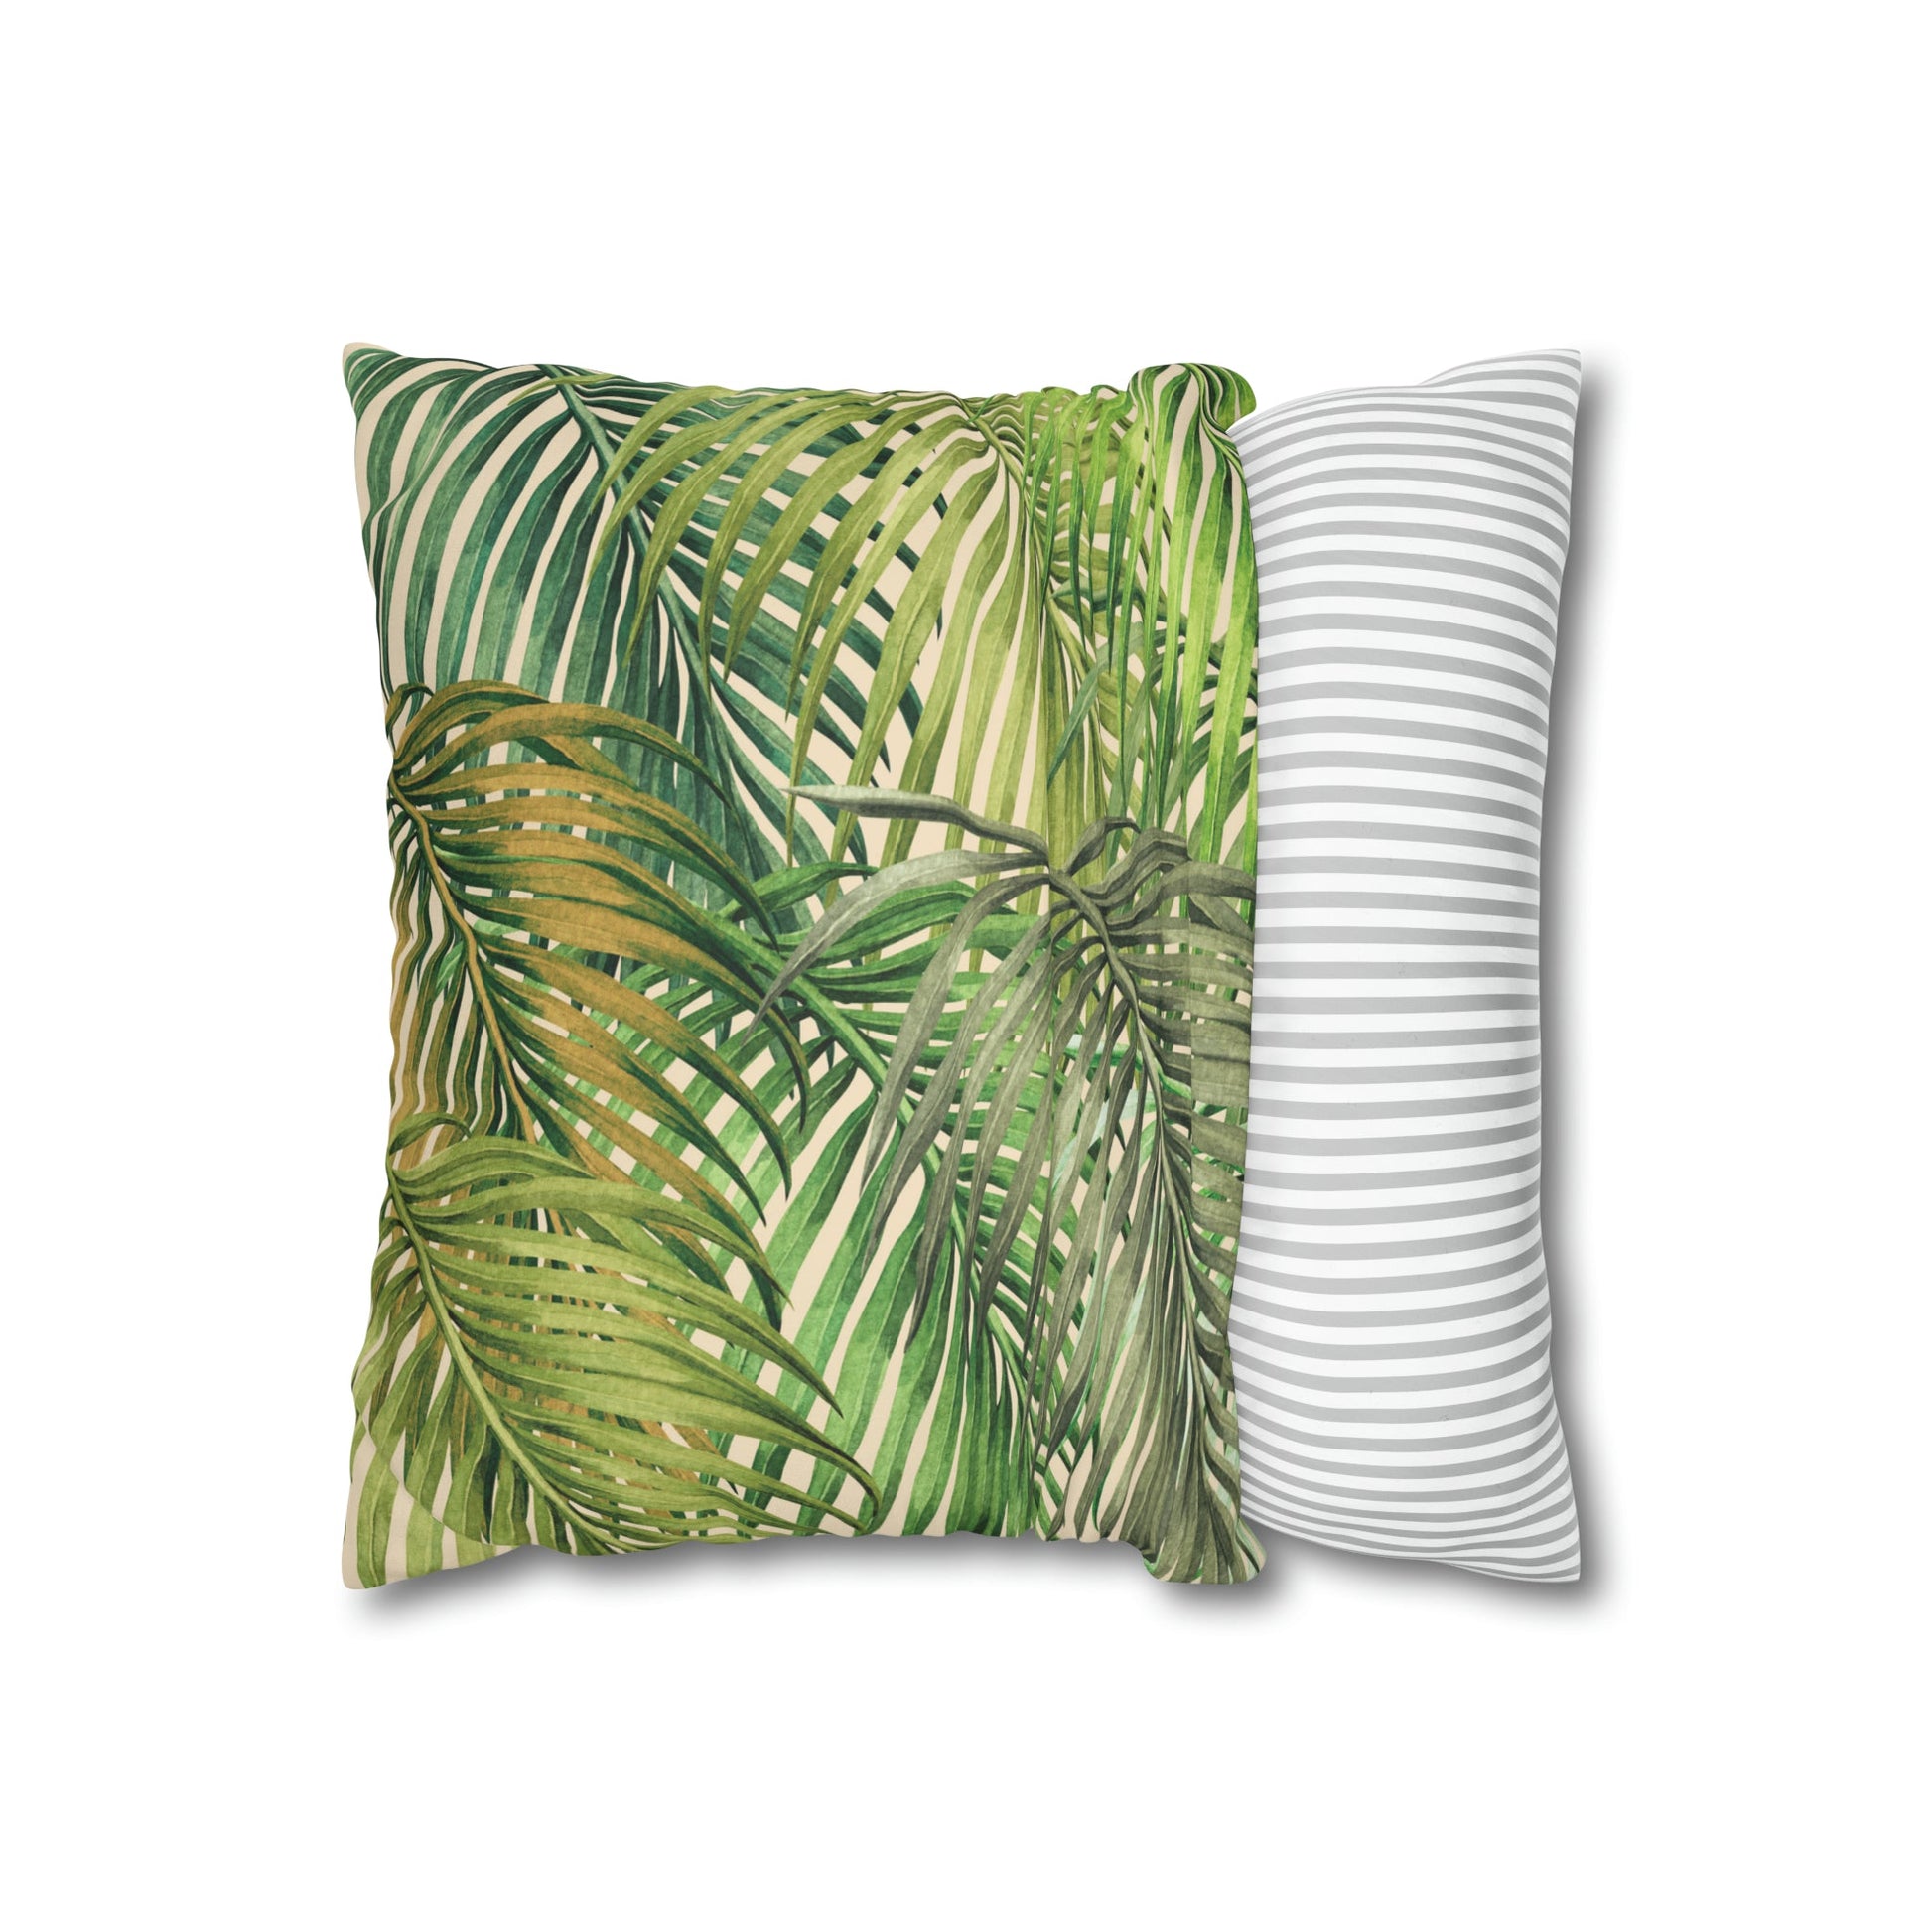 Faux Suede Square Pillow Watercolor Palm Leaf (4 sizes) - Global Village Kailua Boutique